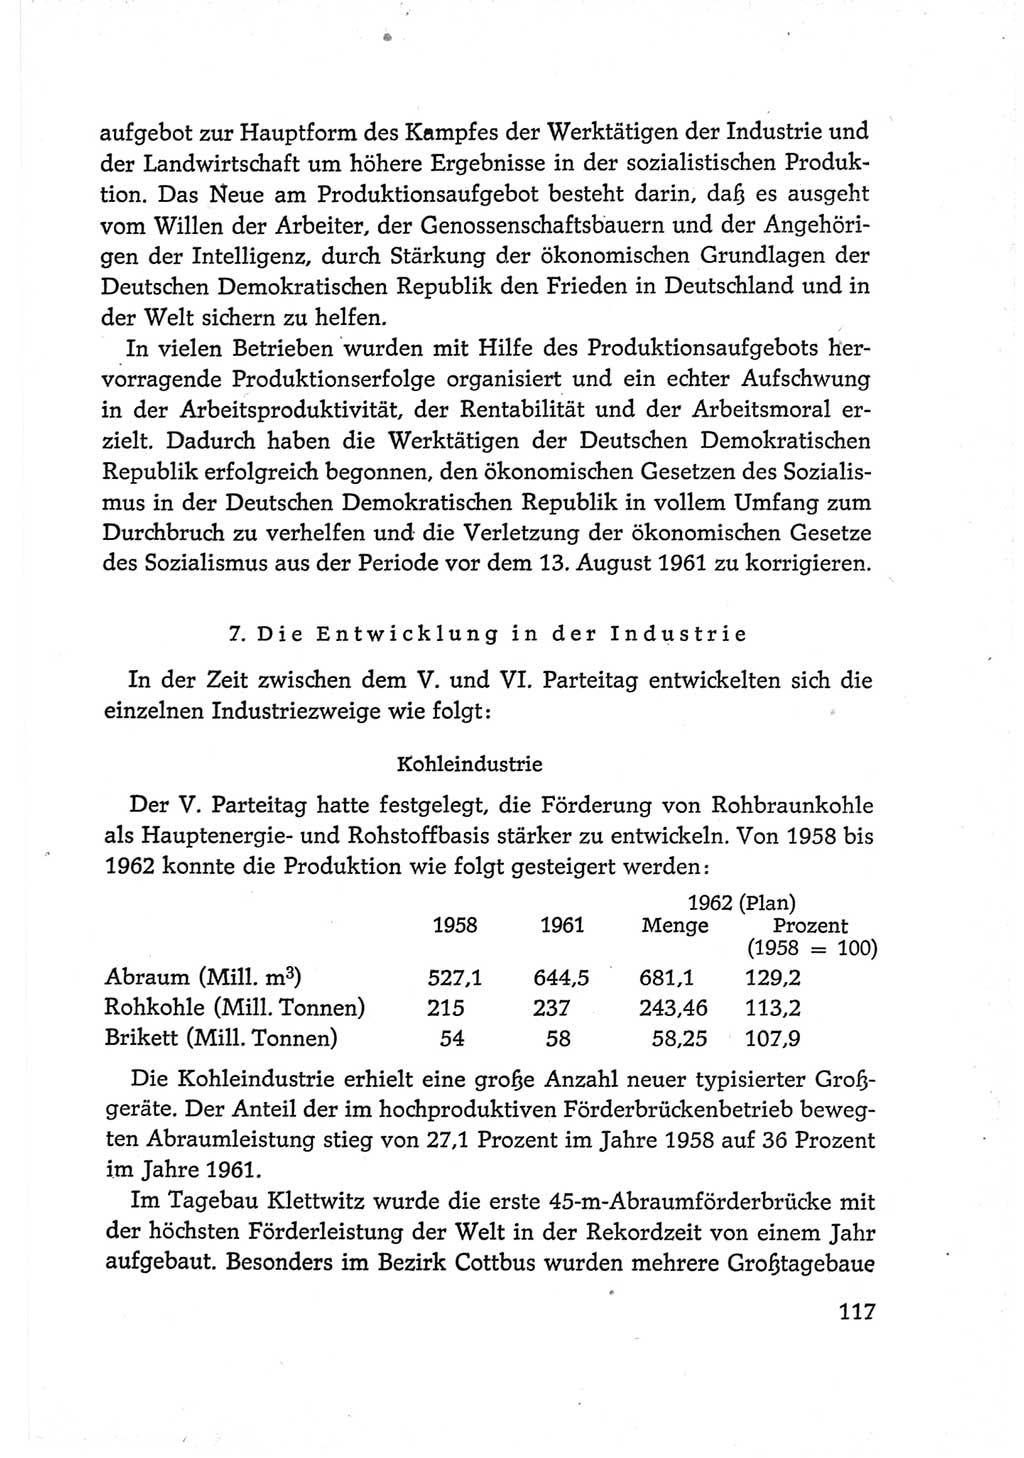 Protokoll der Verhandlungen des Ⅵ. Parteitages der Sozialistischen Einheitspartei Deutschlands (SED) [Deutsche Demokratische Republik (DDR)] 1963, Band Ⅳ, Seite 117 (Prot. Verh. Ⅵ. PT SED DDR 1963, Bd. Ⅳ, S. 117)